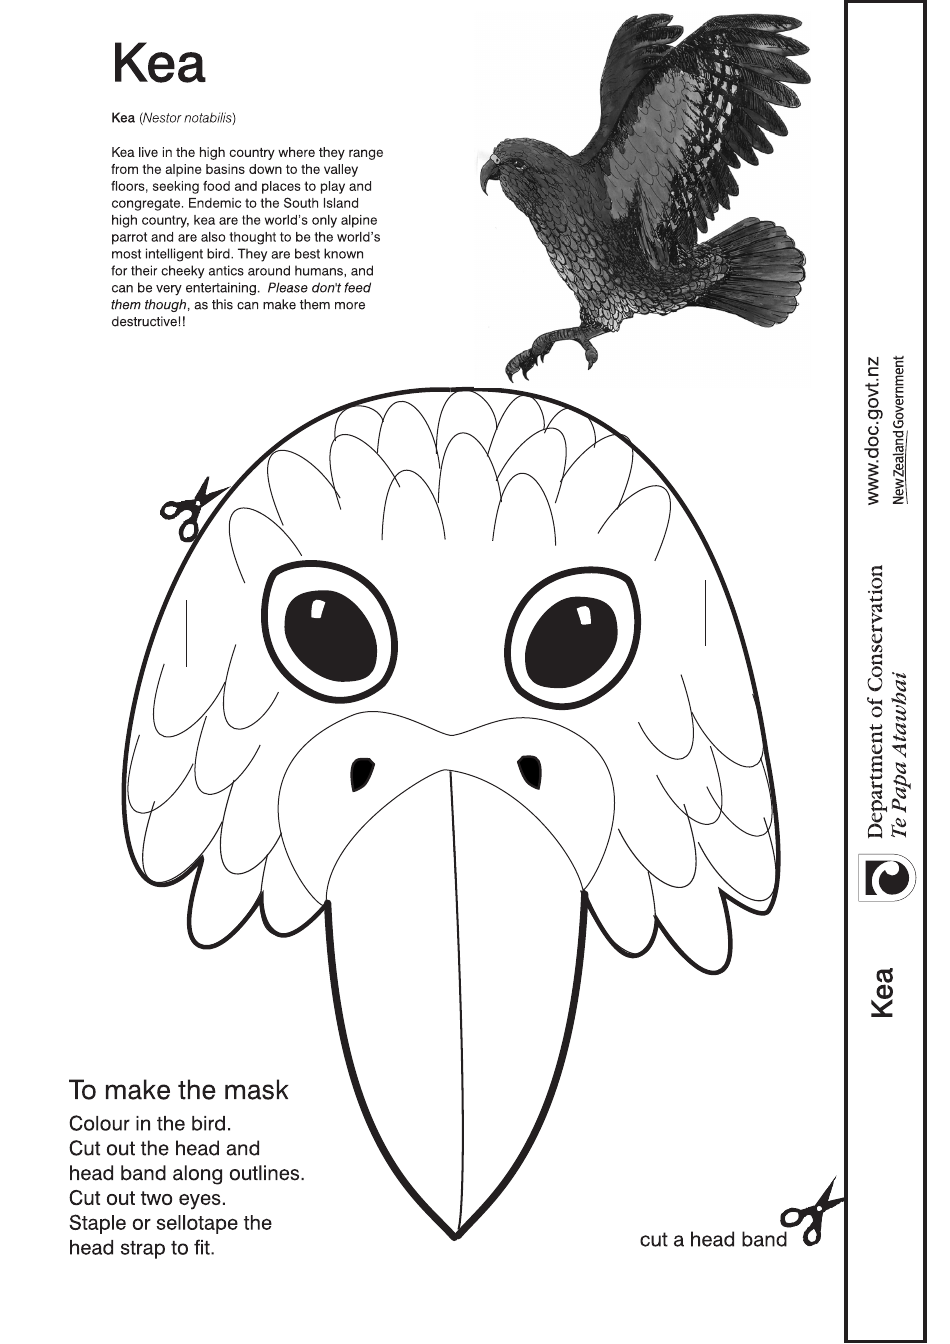 Kea Mask - New Zealand, Page 1